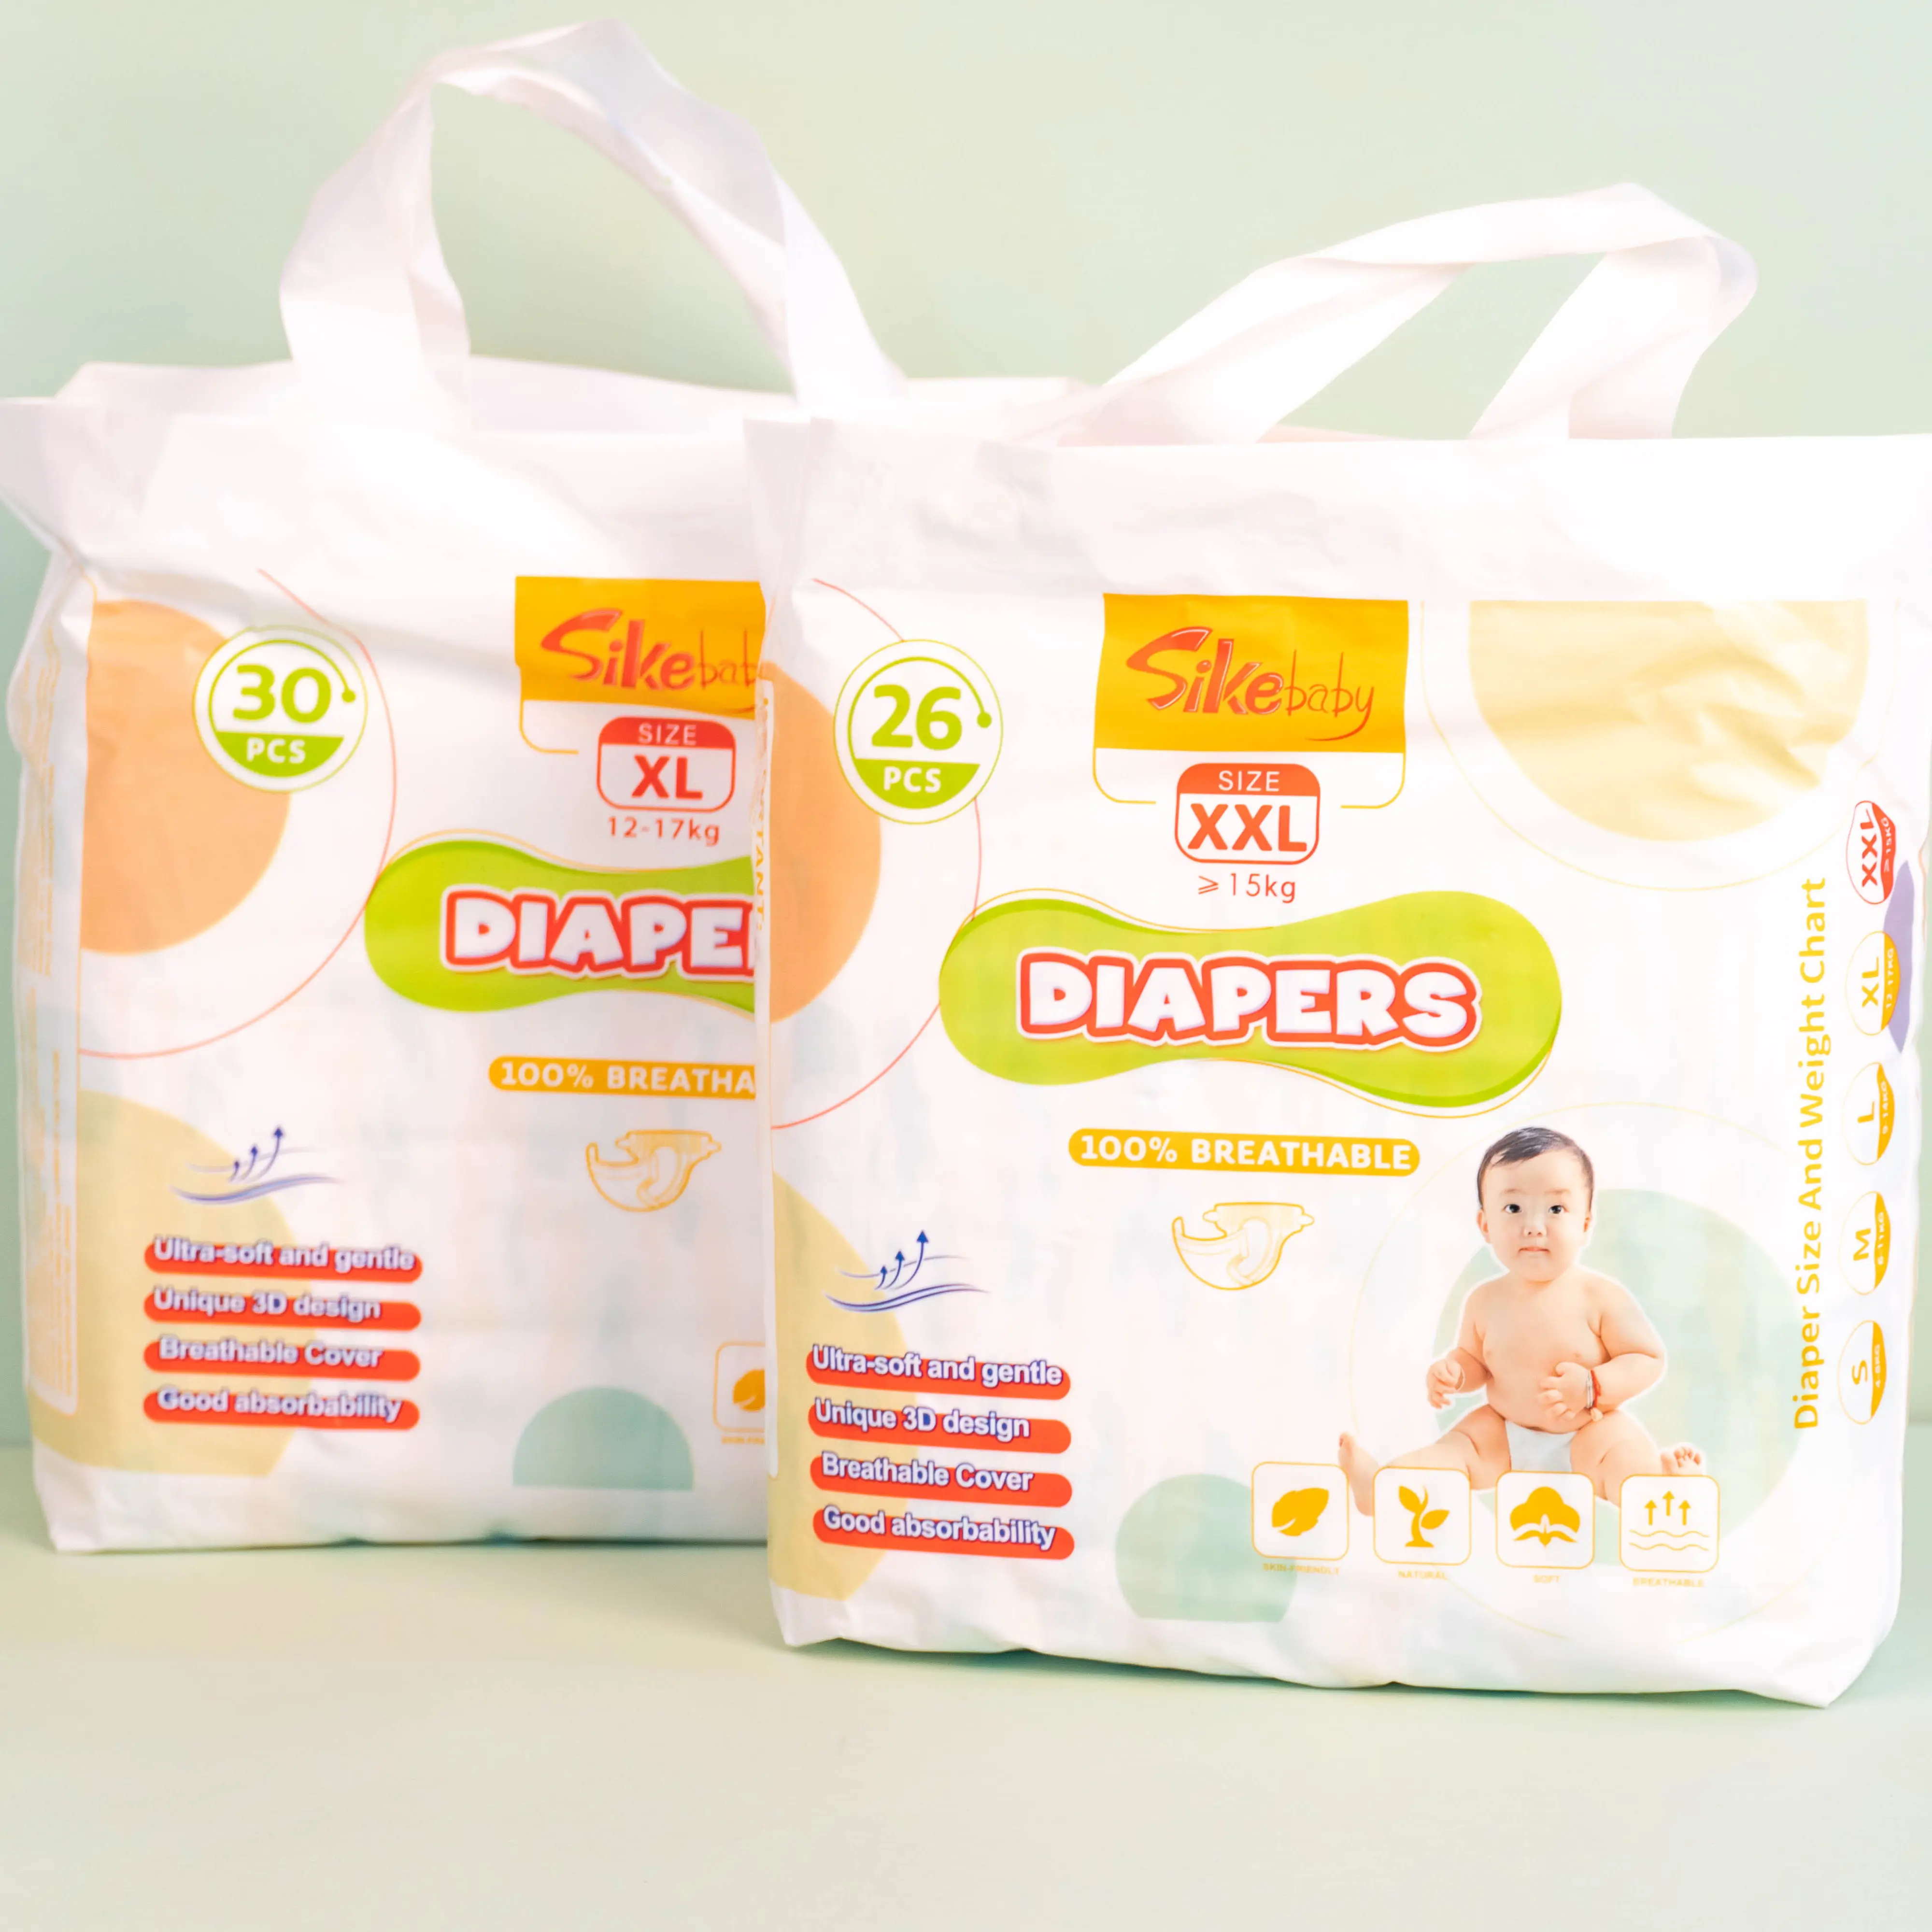 Vente en gros de nouvelles couches à bas prix fabricants de produits softcare en chine échantillon gratuit de couches pour bébés